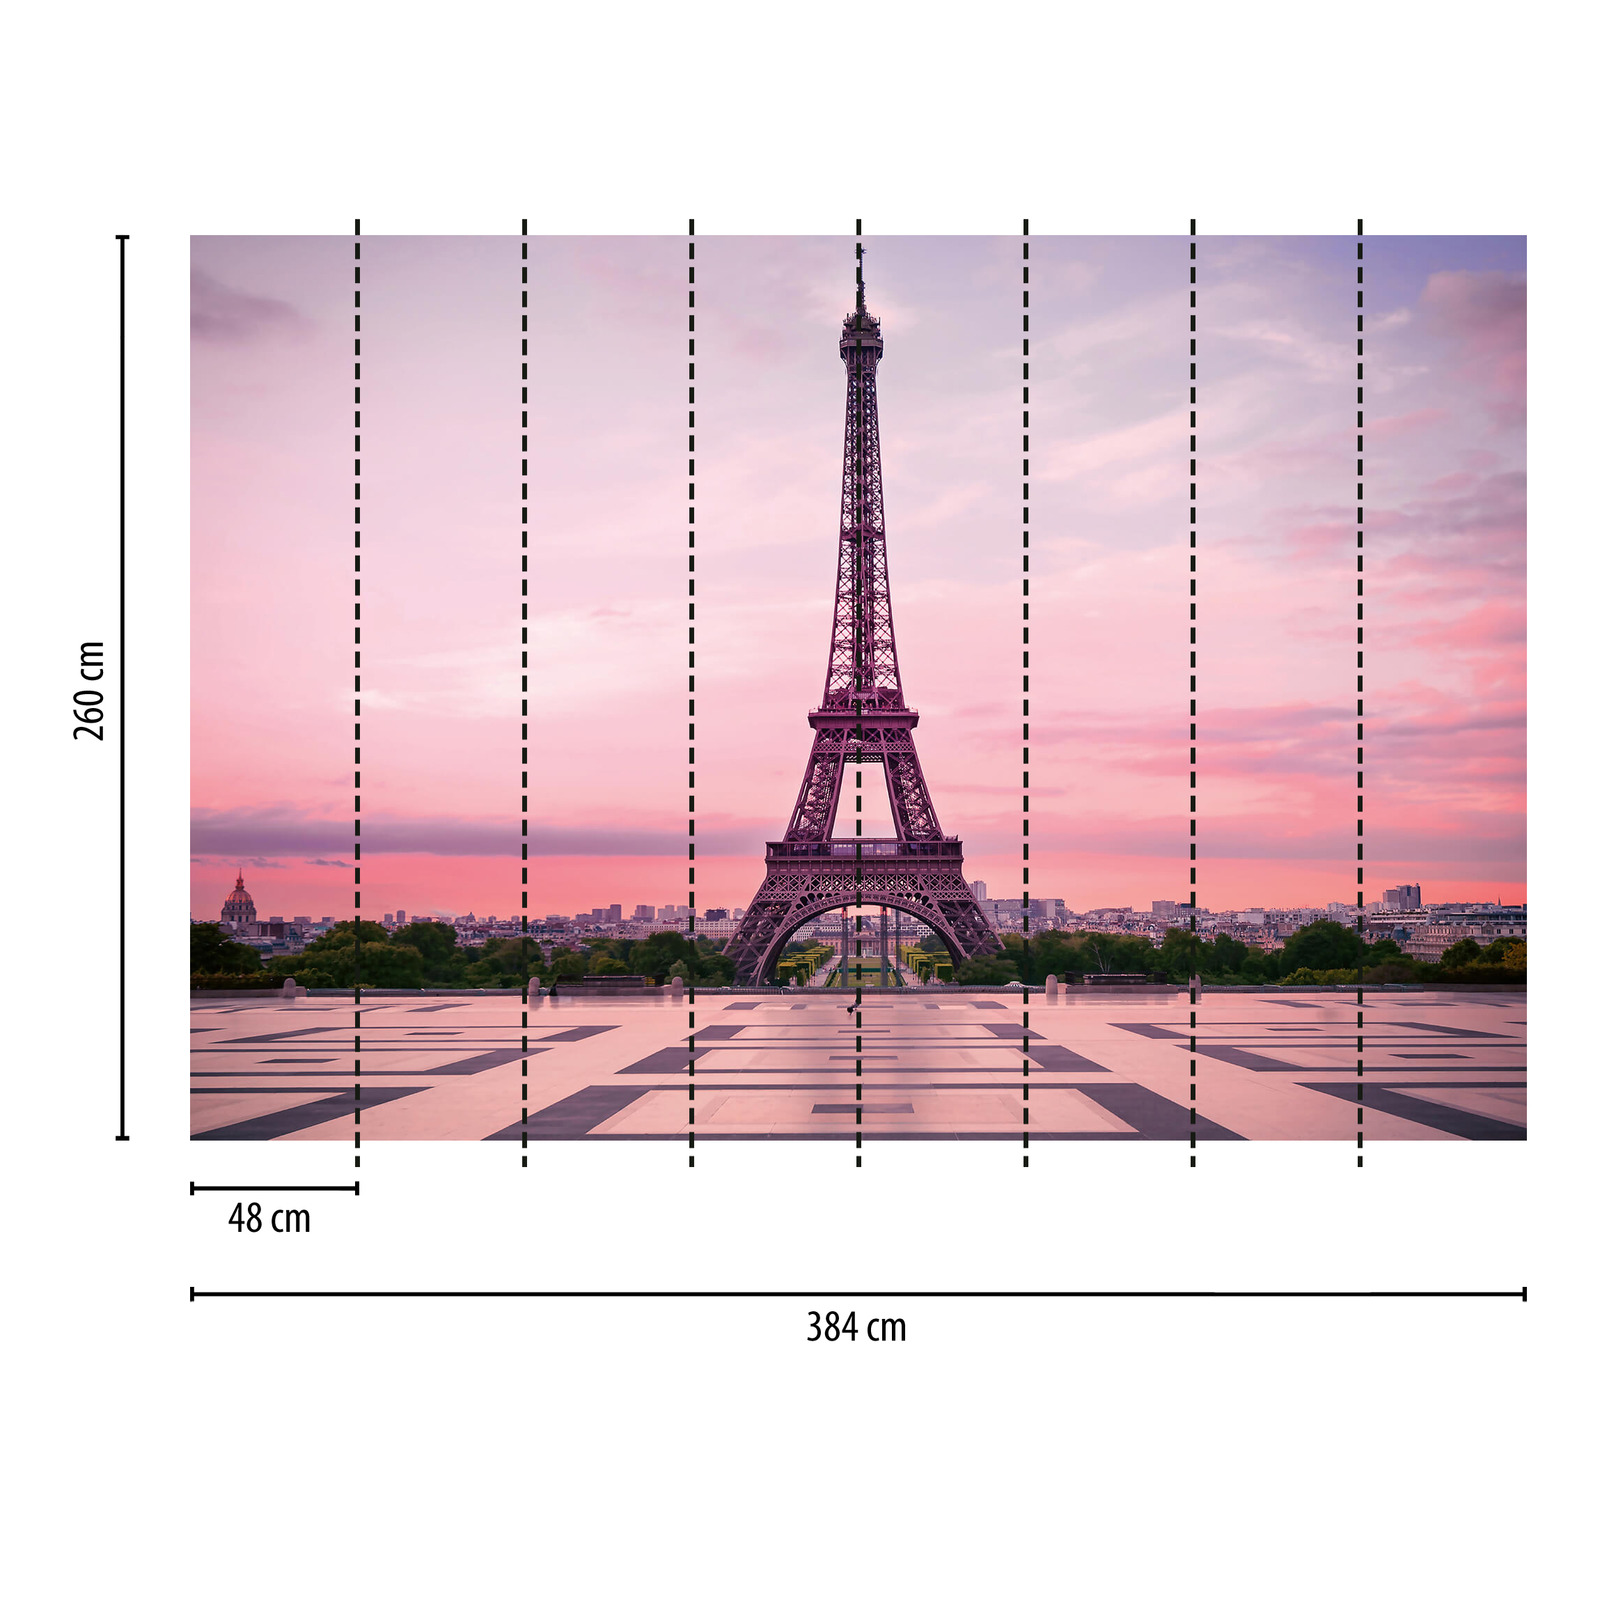             Muurschildering Eiffeltoren Parijs bij zonsondergang
        